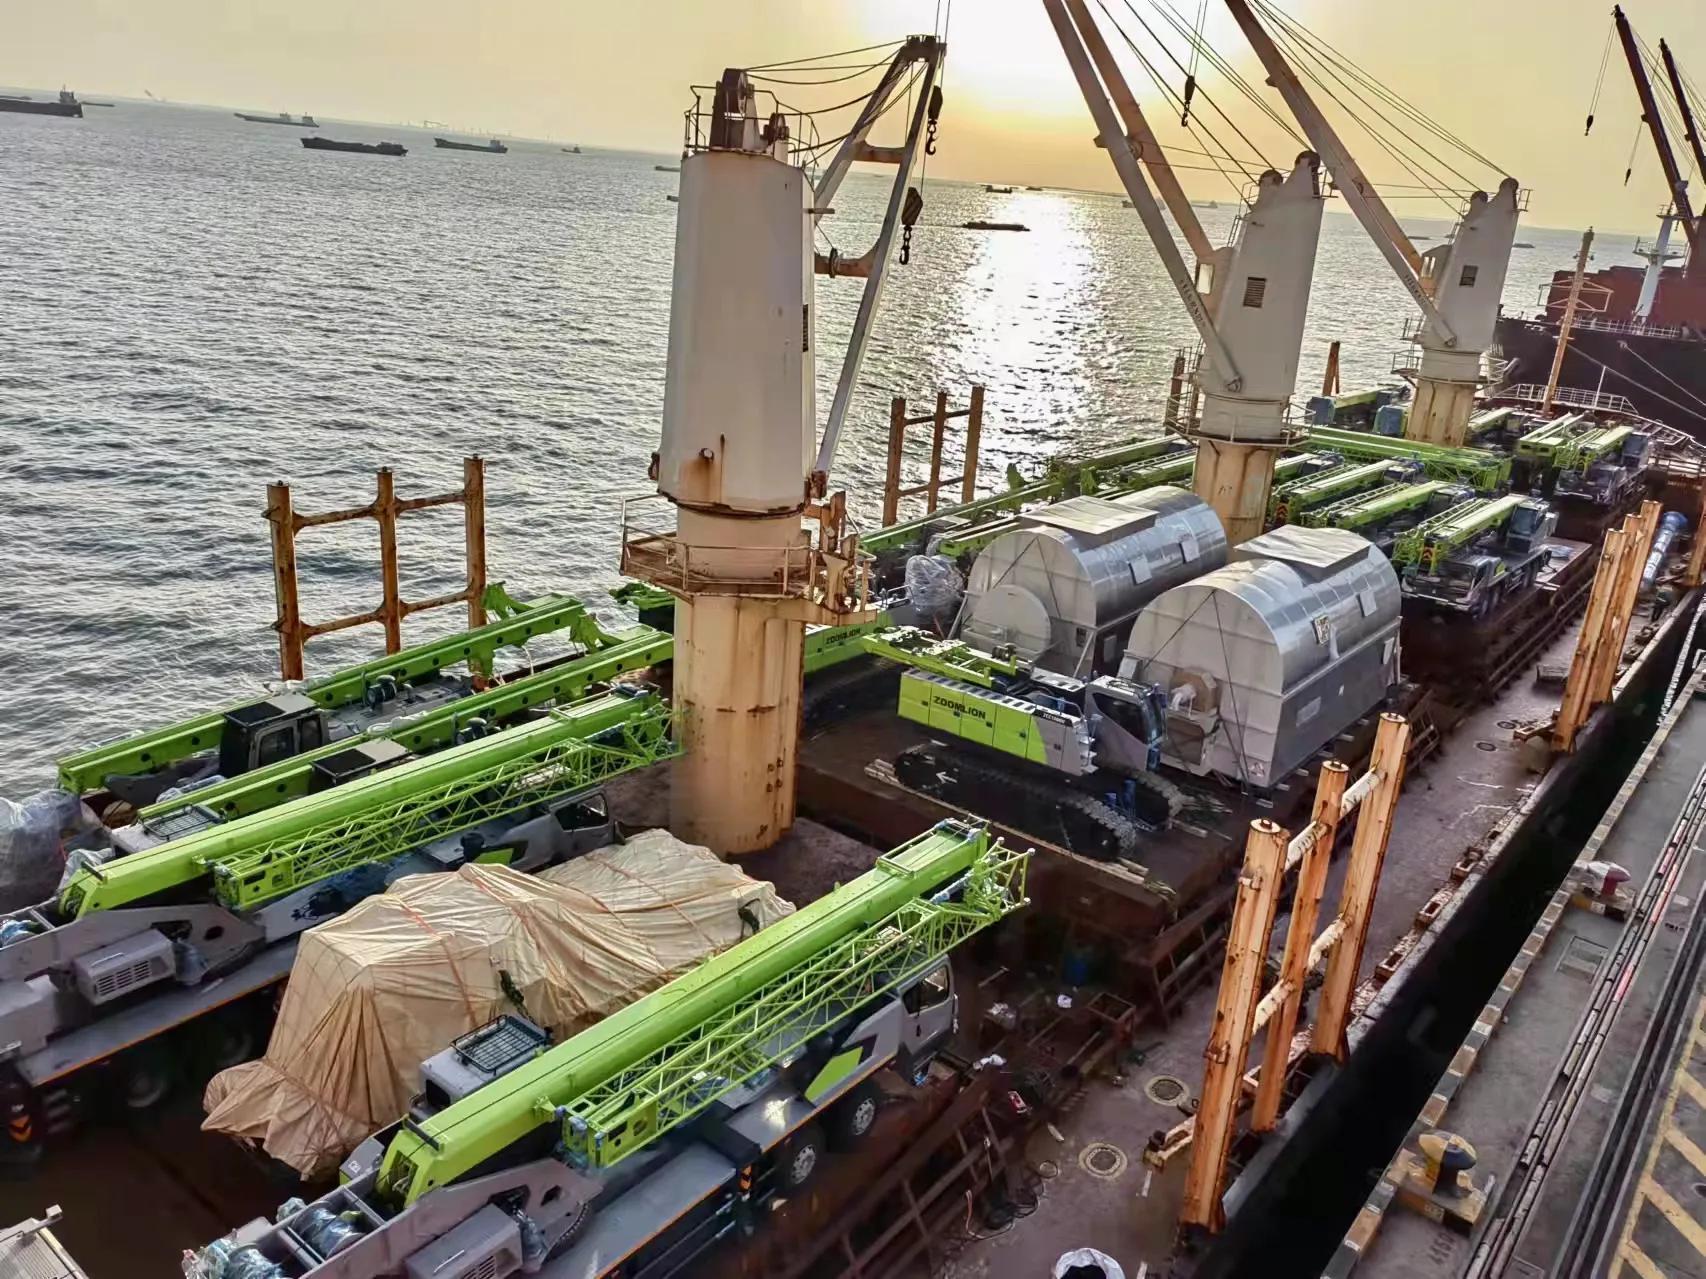 中联重科全线产品热销海外 200台高端装备劈波斩浪奔赴土耳其